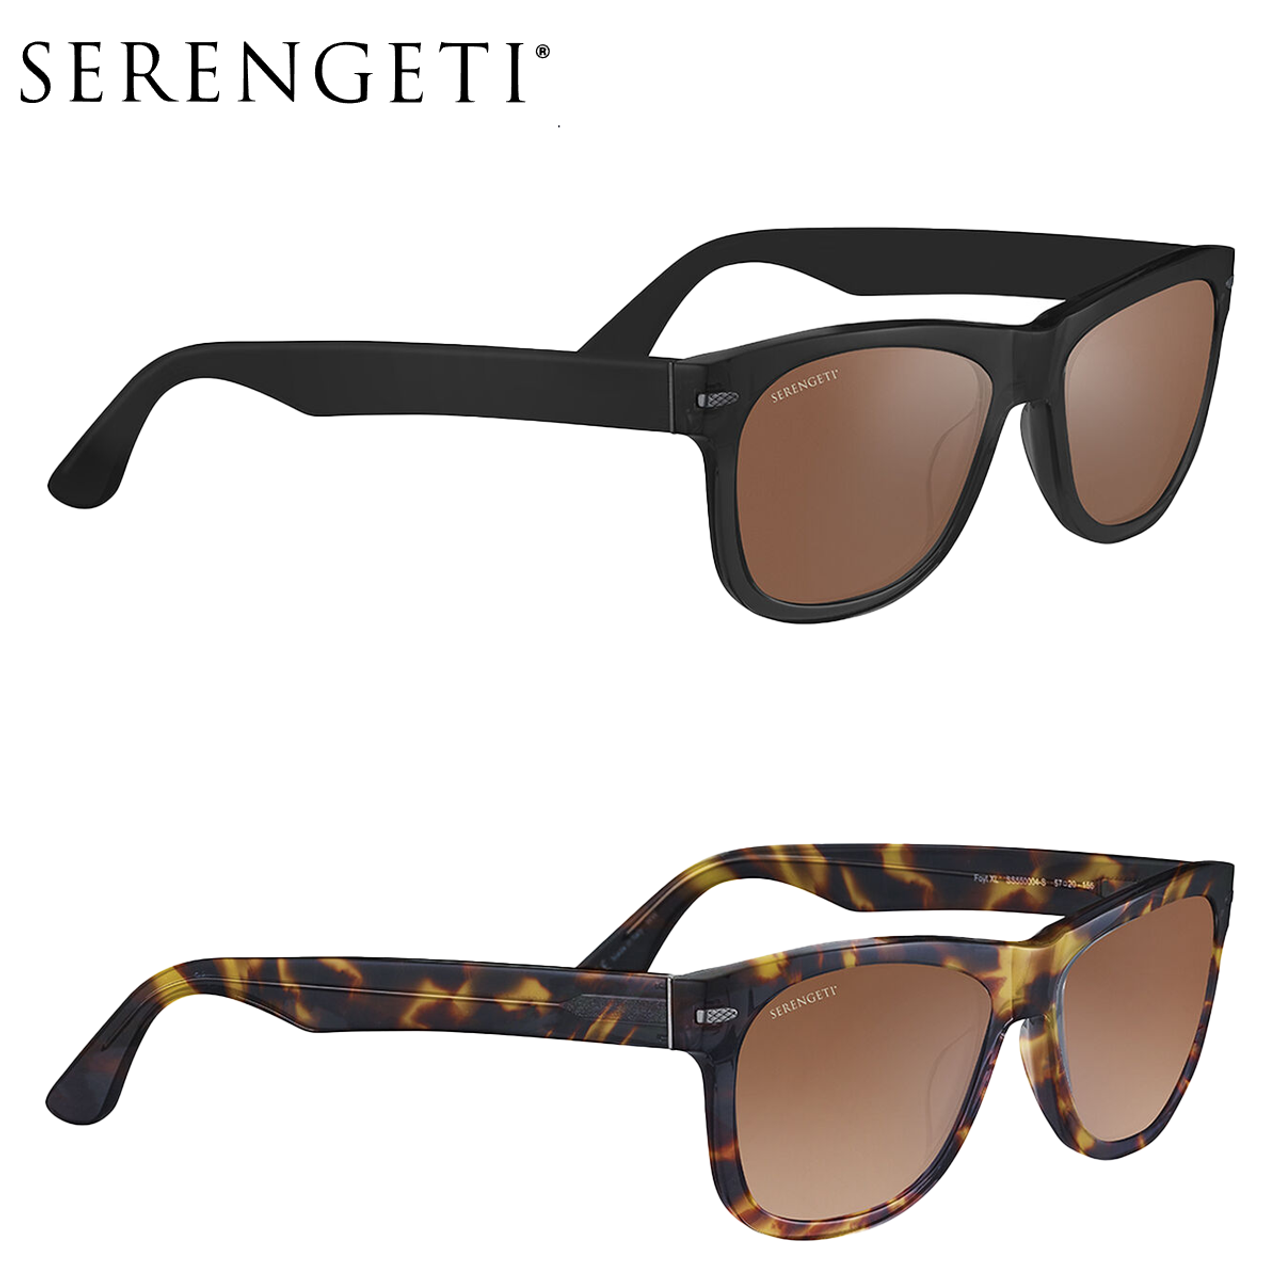 Serengeti® FOYT Large Men's Sunglasses product image